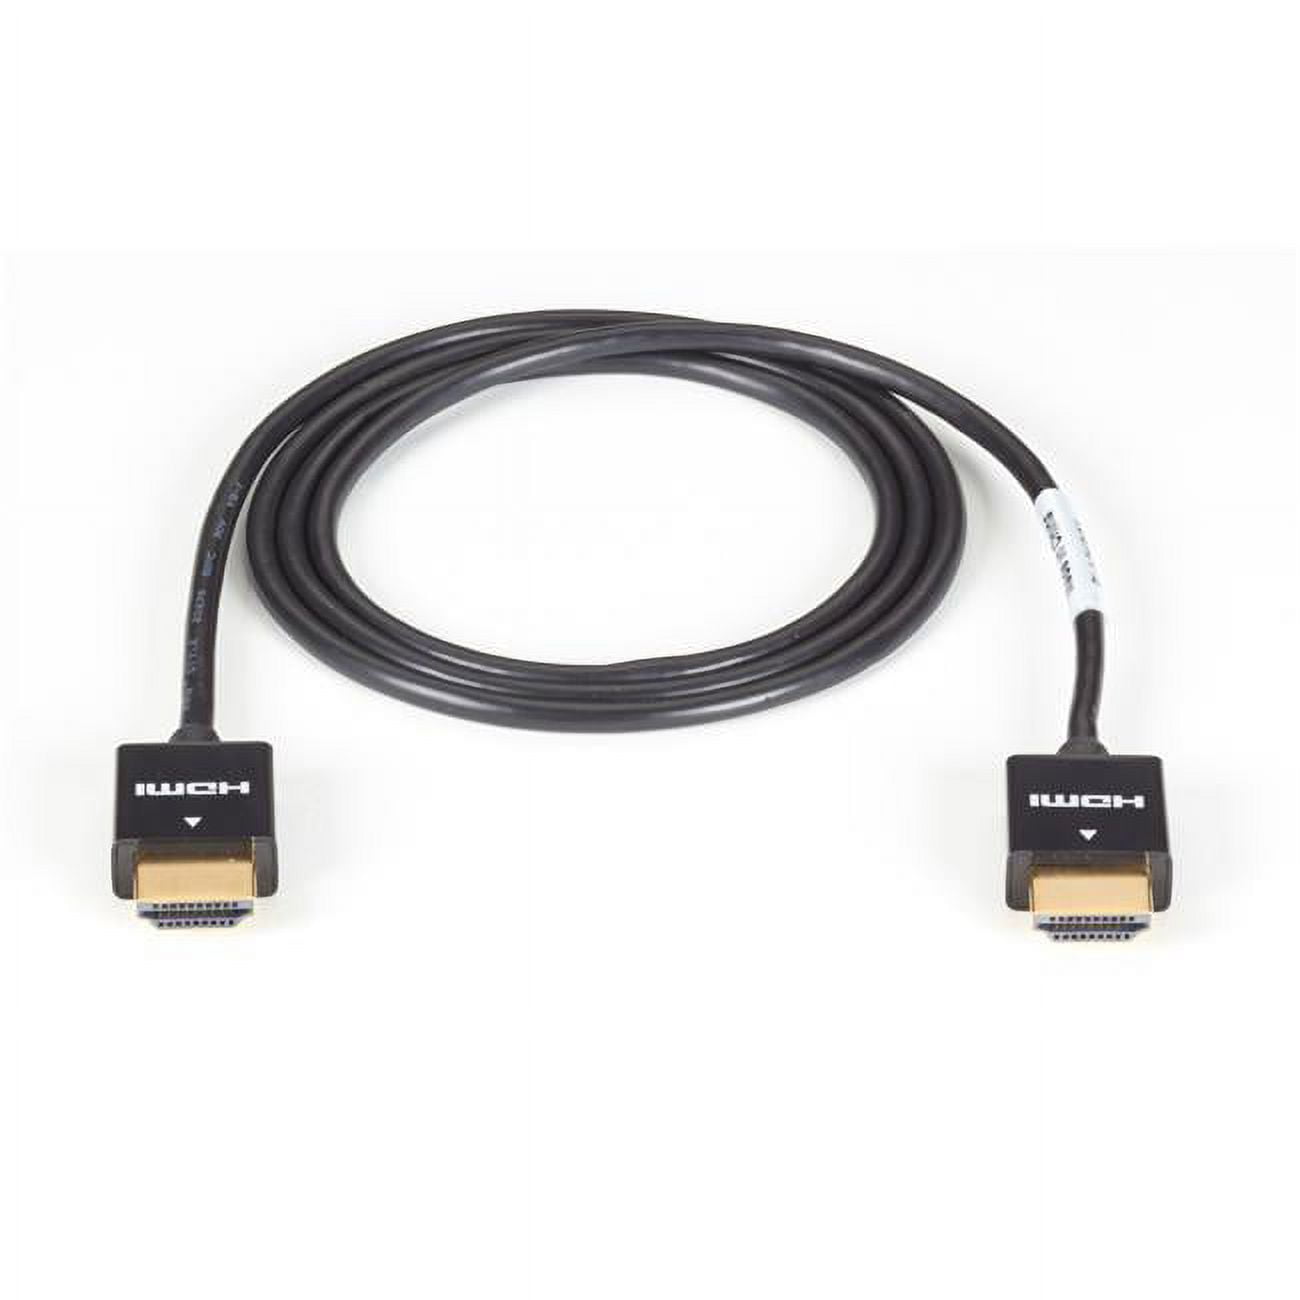 Alfatron ALF-HDMI5 5 m HDMI Cable 